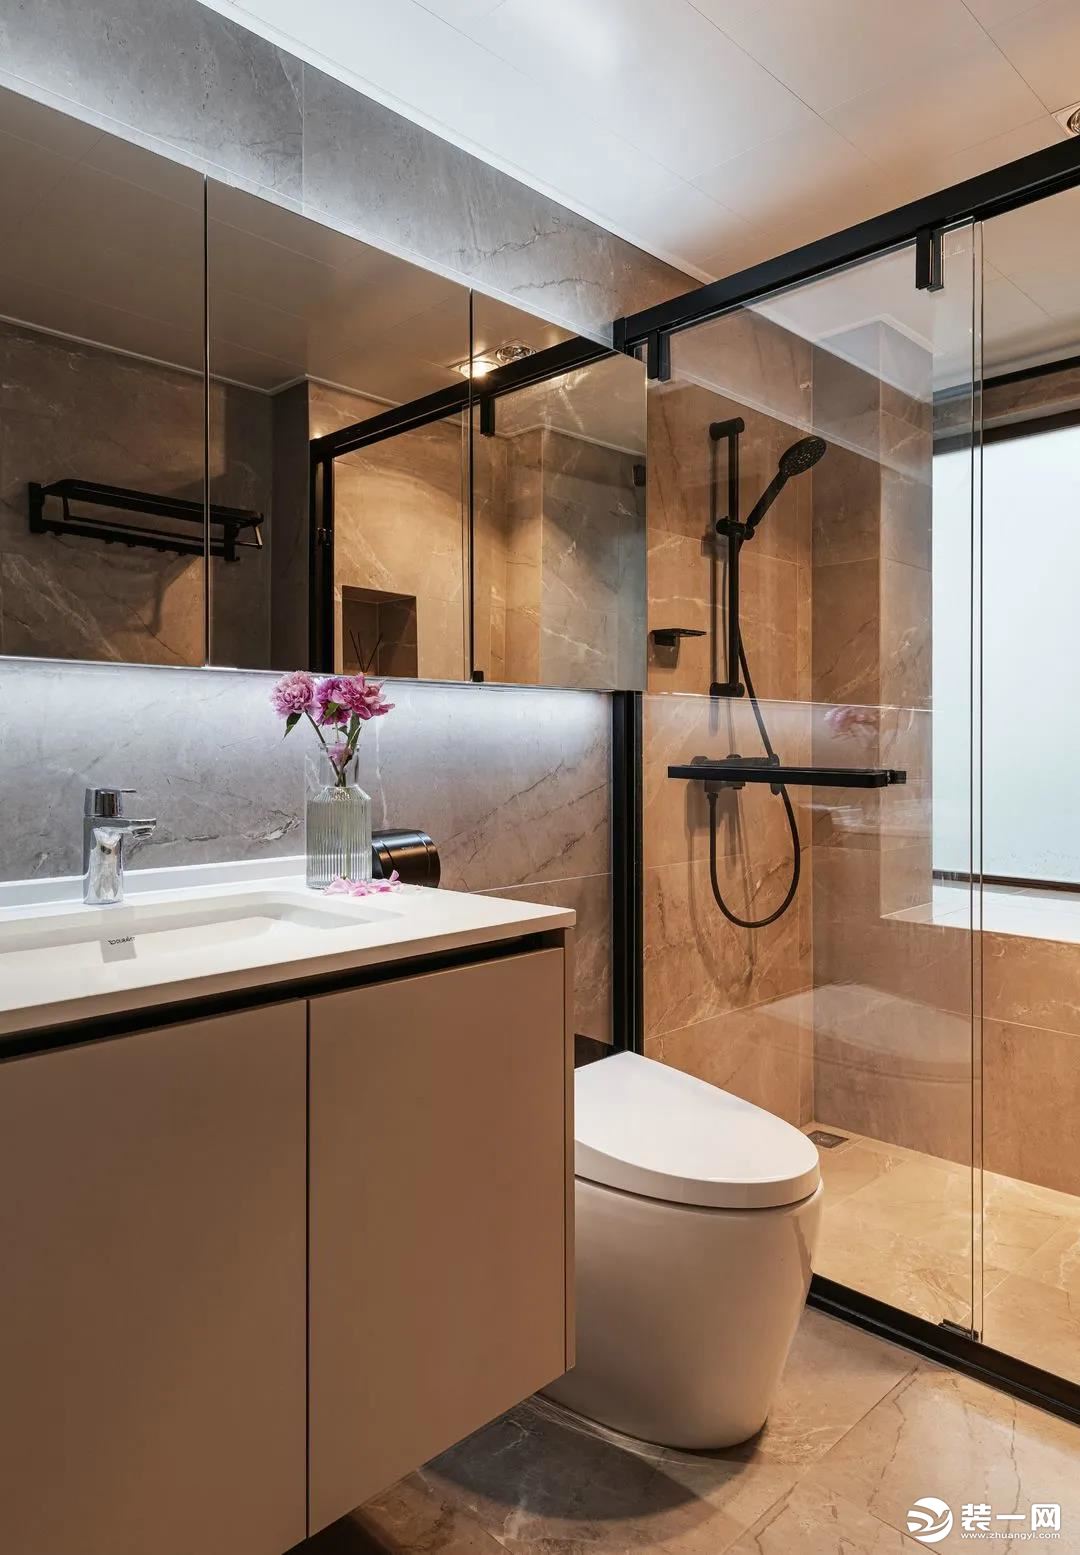 卫生间作为功能性空间，洗漱台、马桶、淋浴室置于同一空间，极好地将生活的便捷与艺术融合。